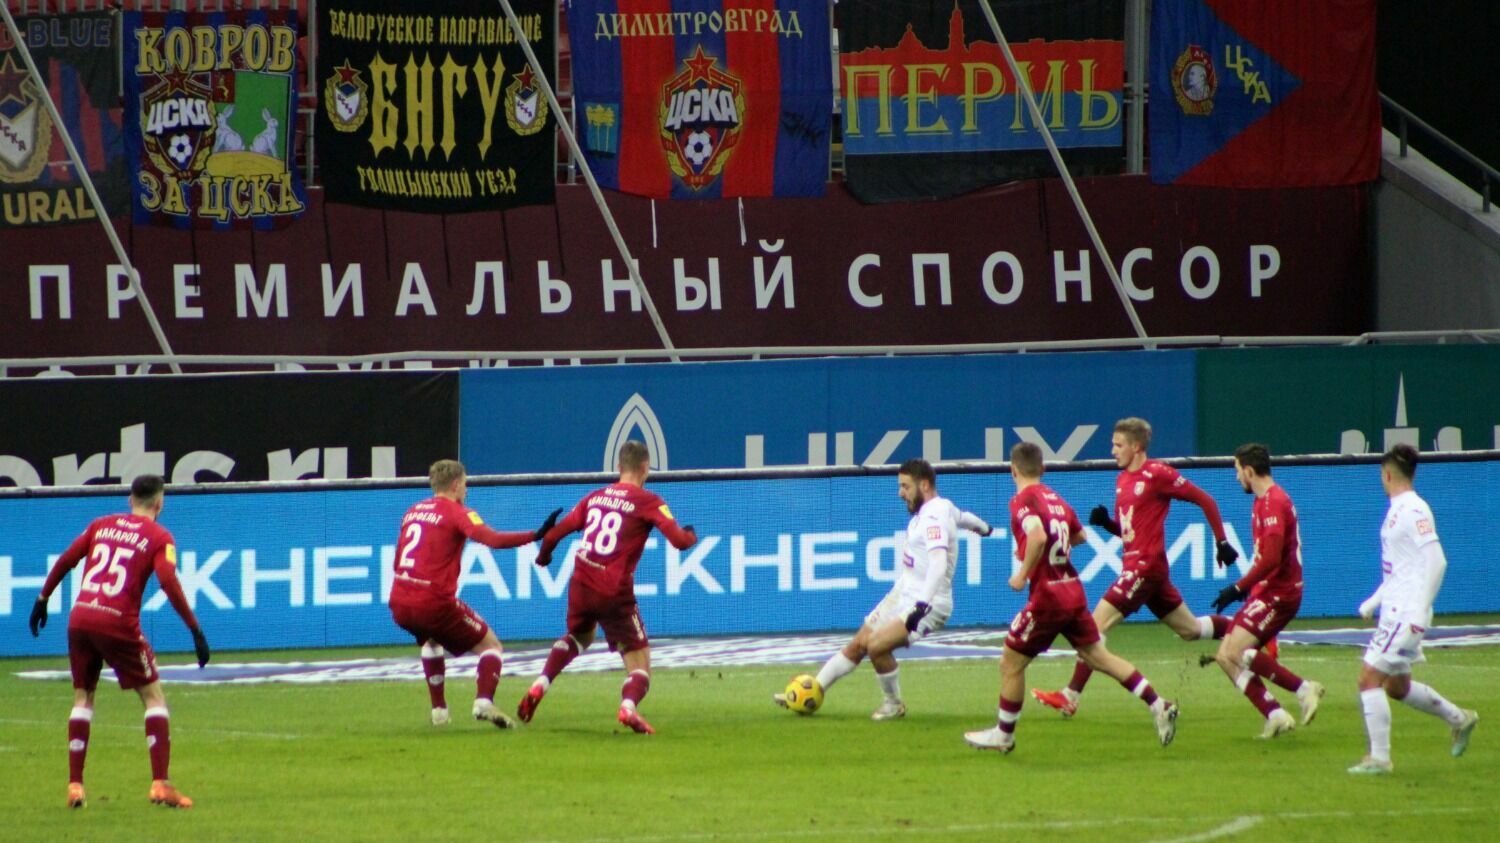 Время матчей московское 